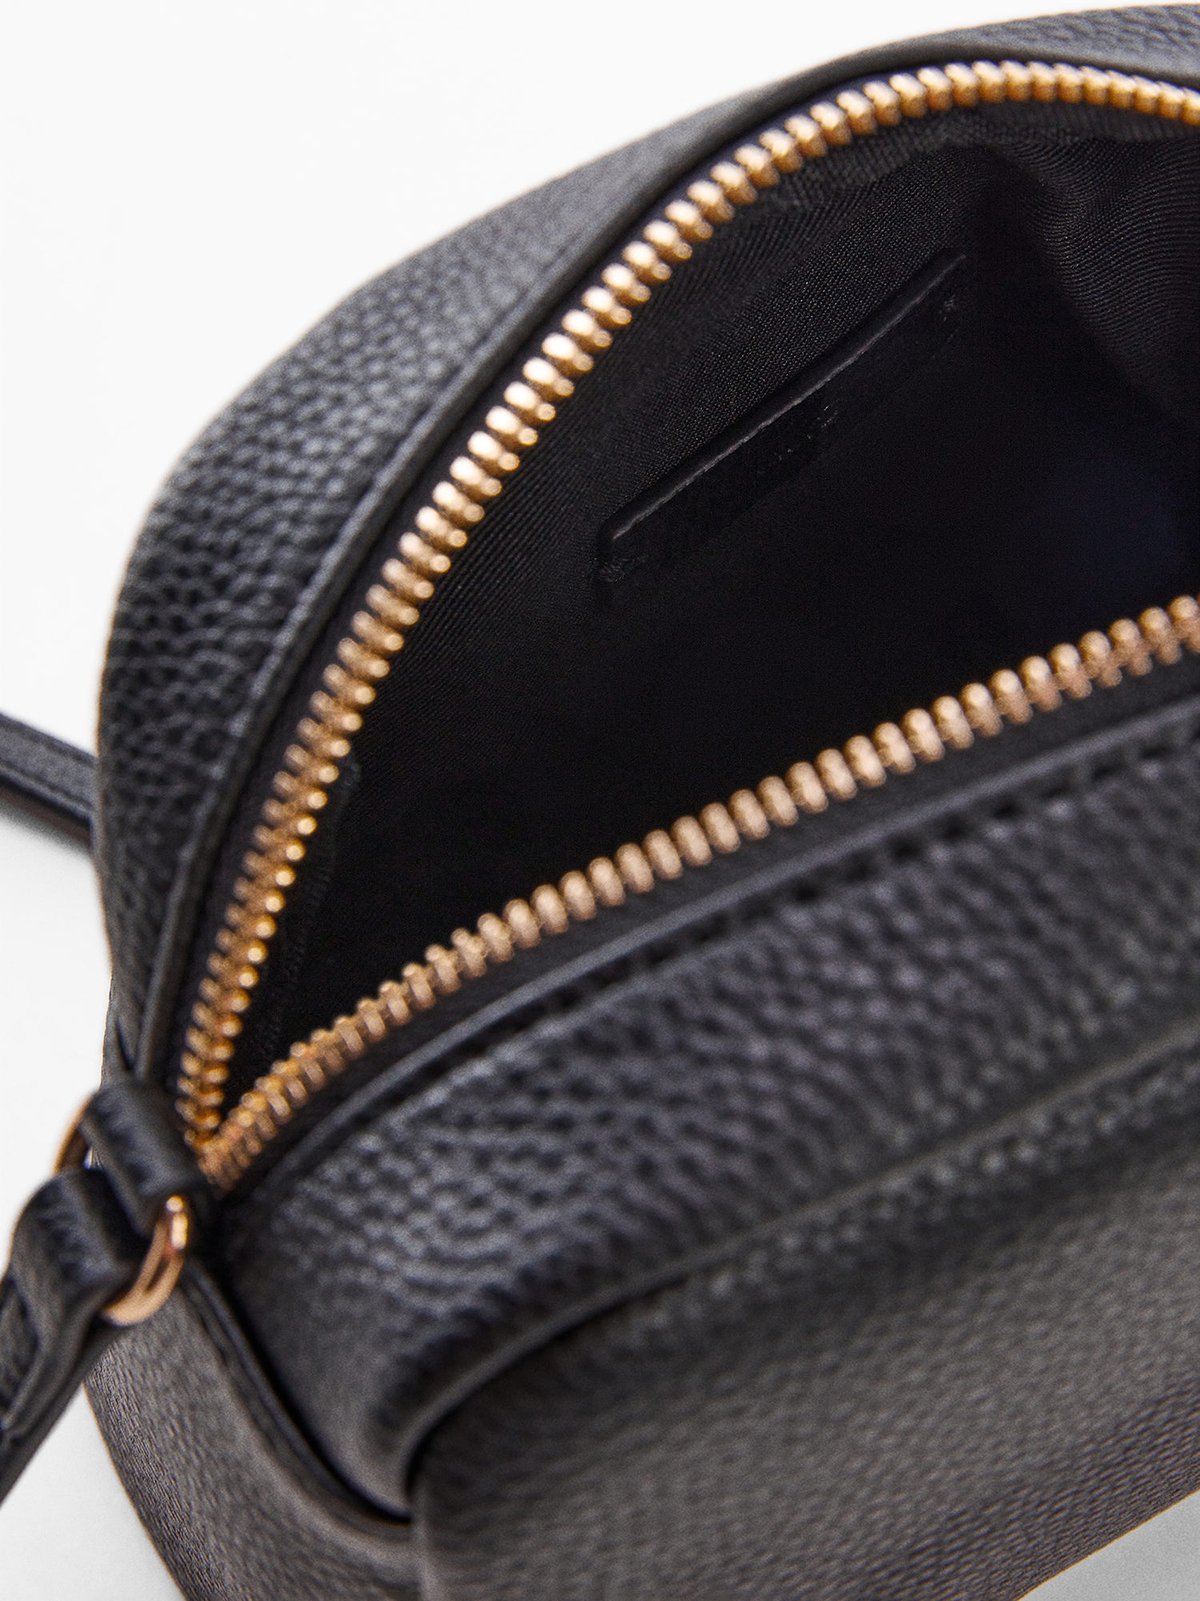 Mango Oasis Flap Over Shoulder Bag, Black, One Size